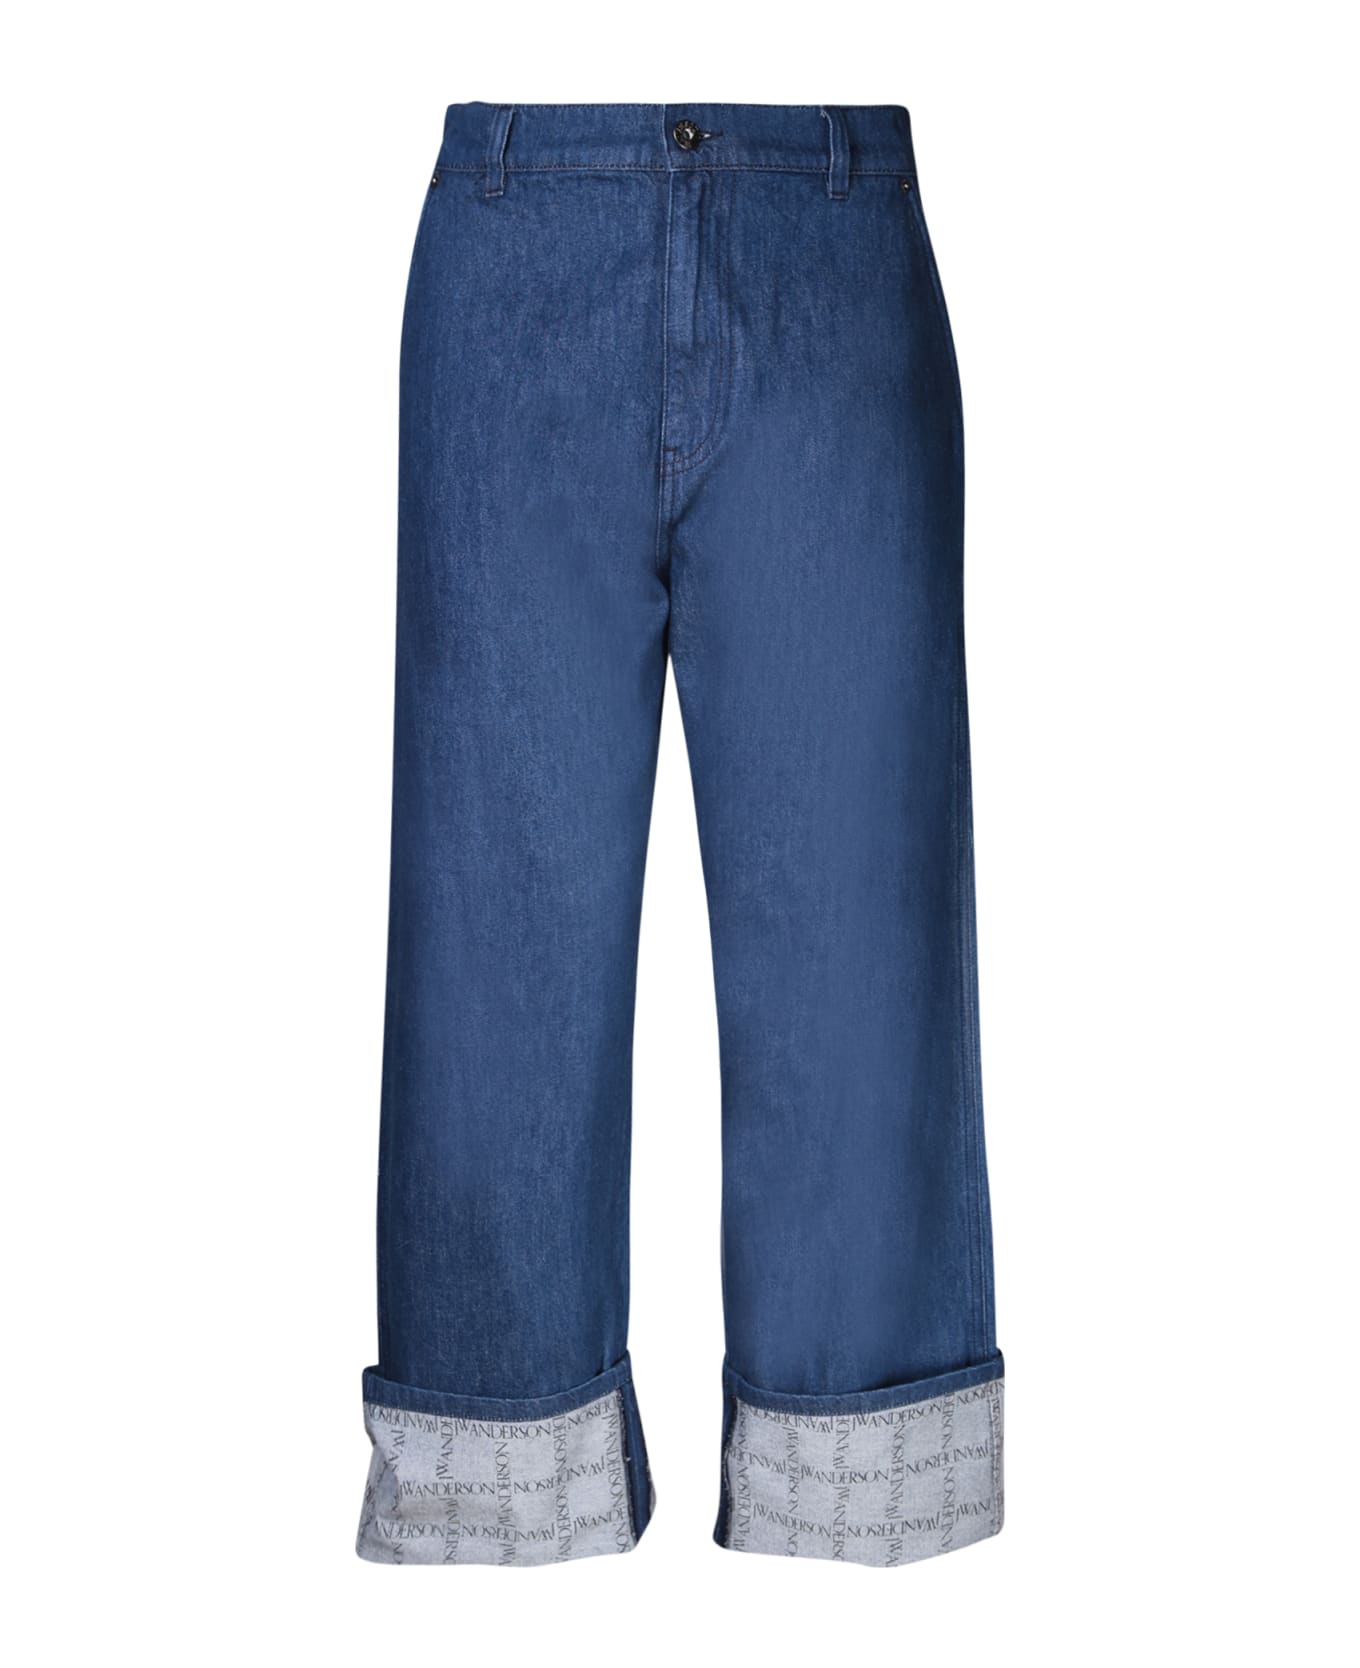 J.W. Anderson Jeans Workwear - INDIGO